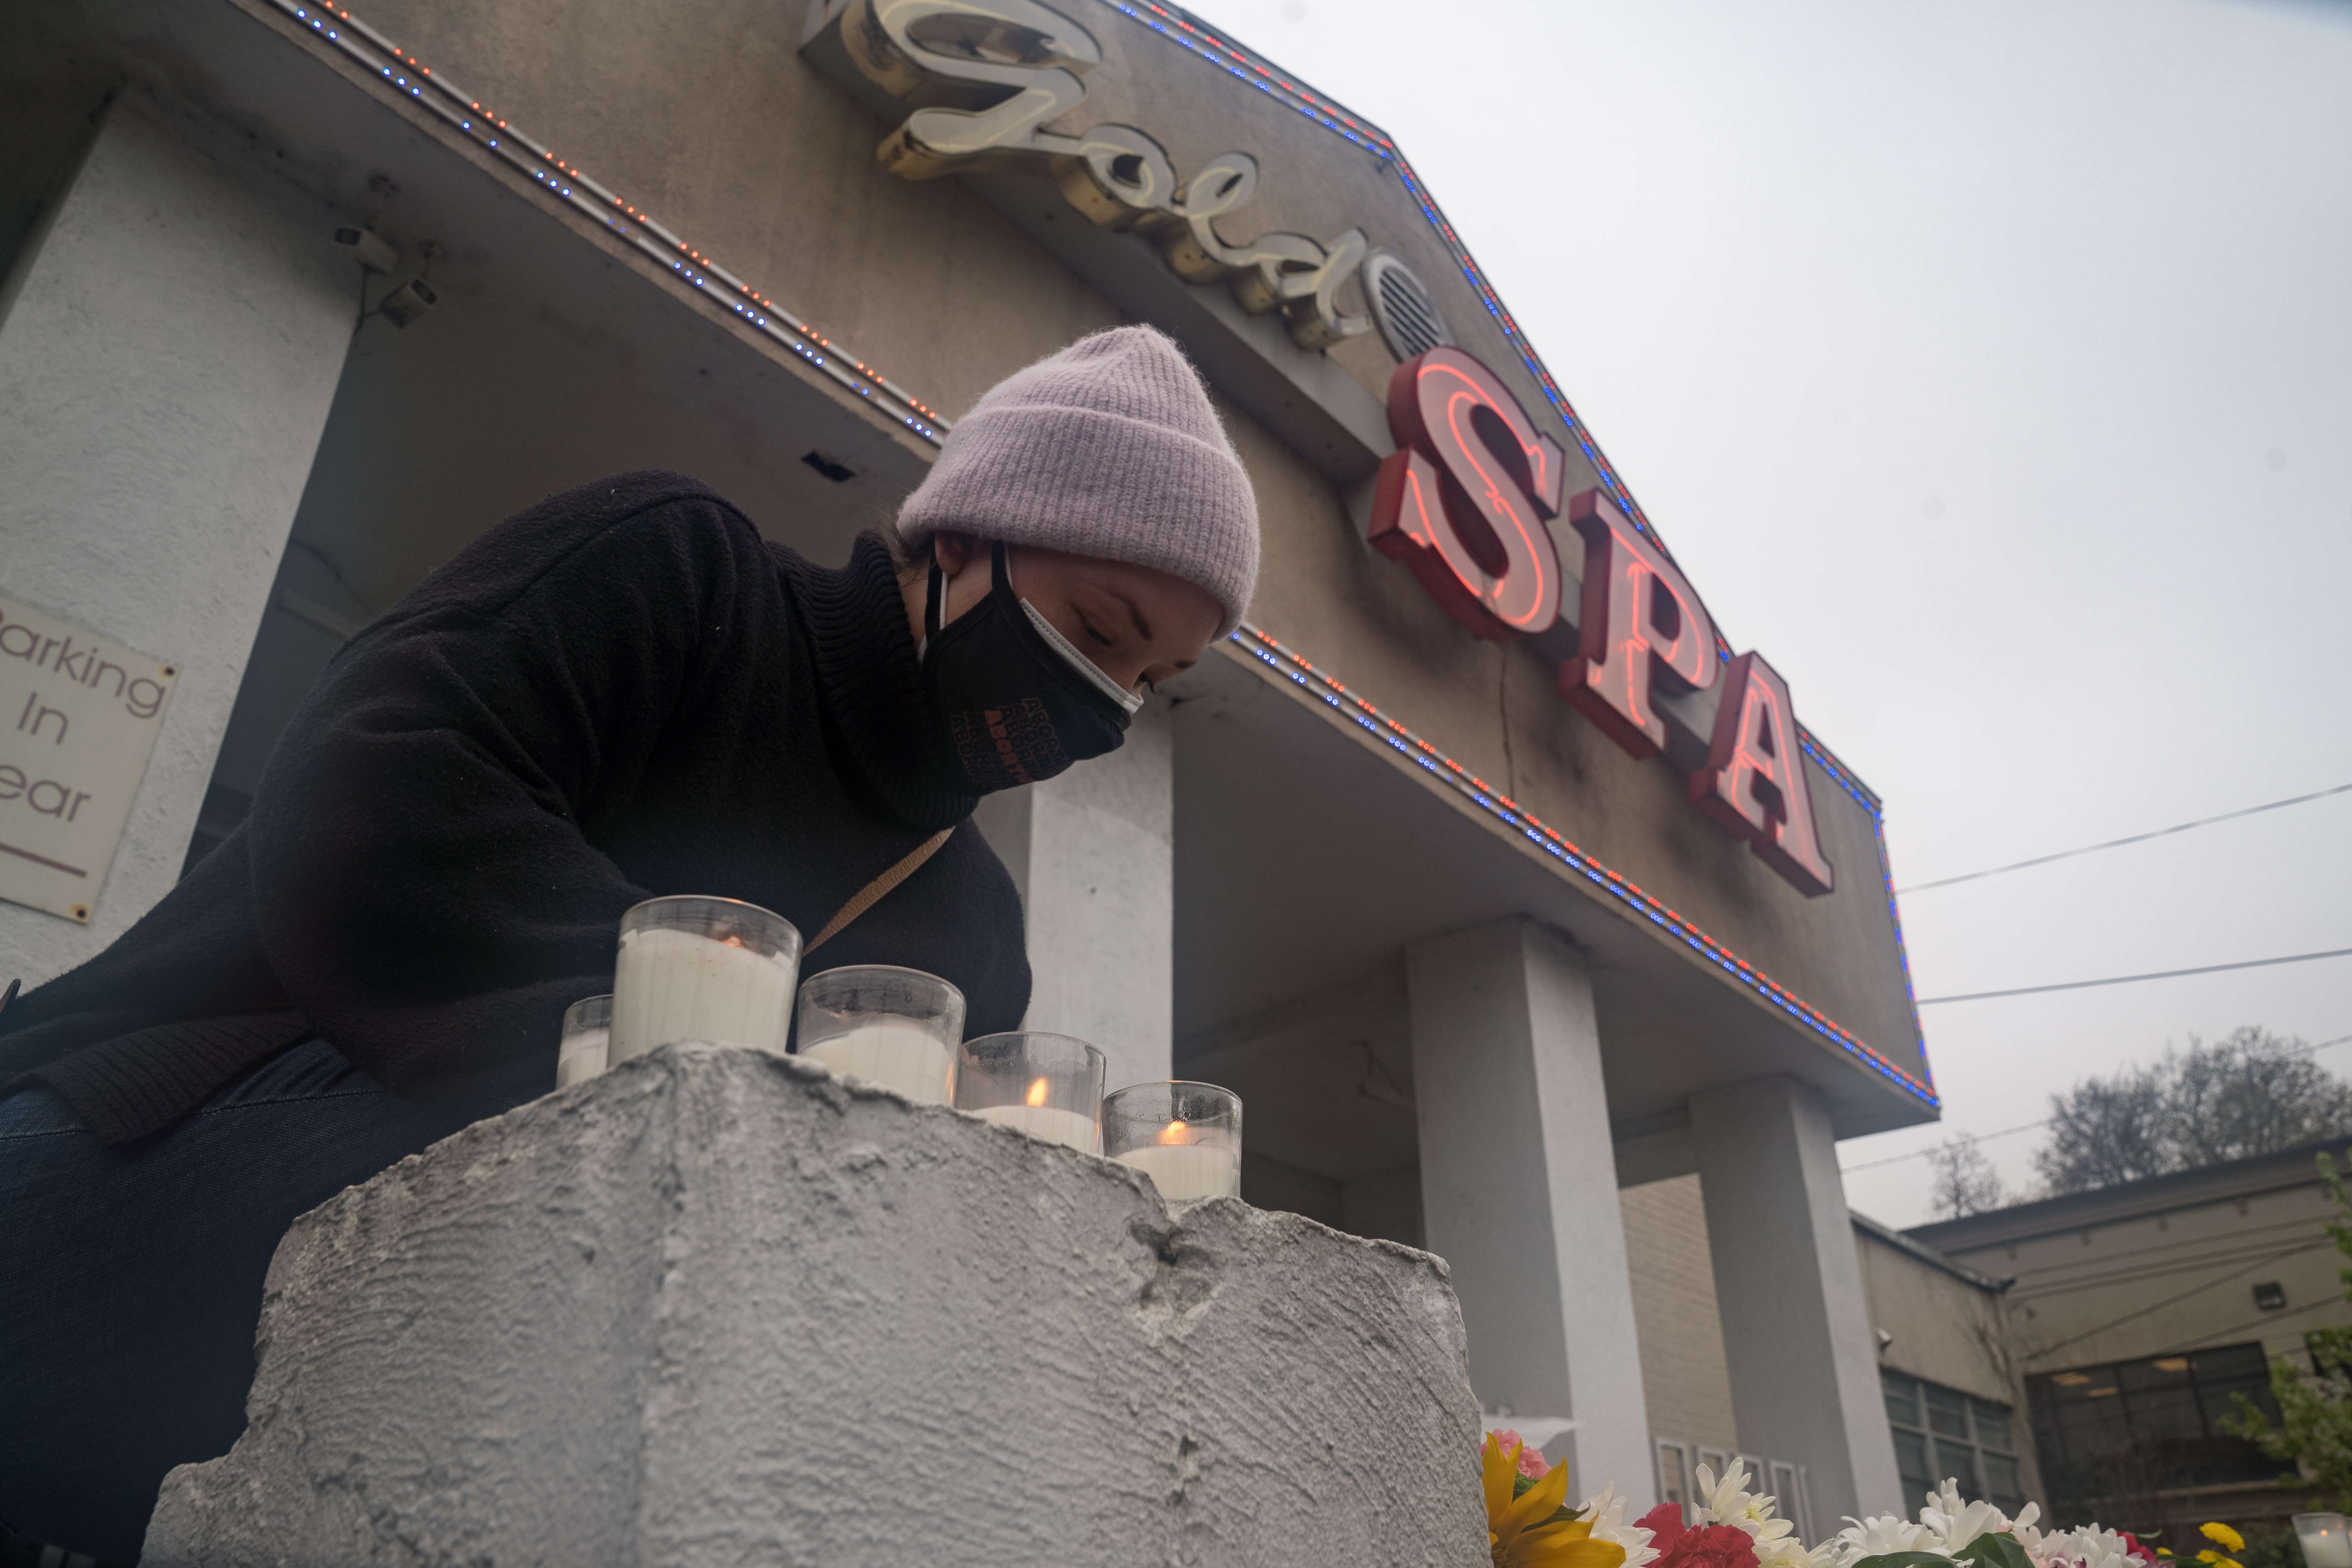 Personas llevan ofrendas florales frente a los salones en donde ocurrió la matanza en Atlanta. (Foto Prensa Libre: AFP)